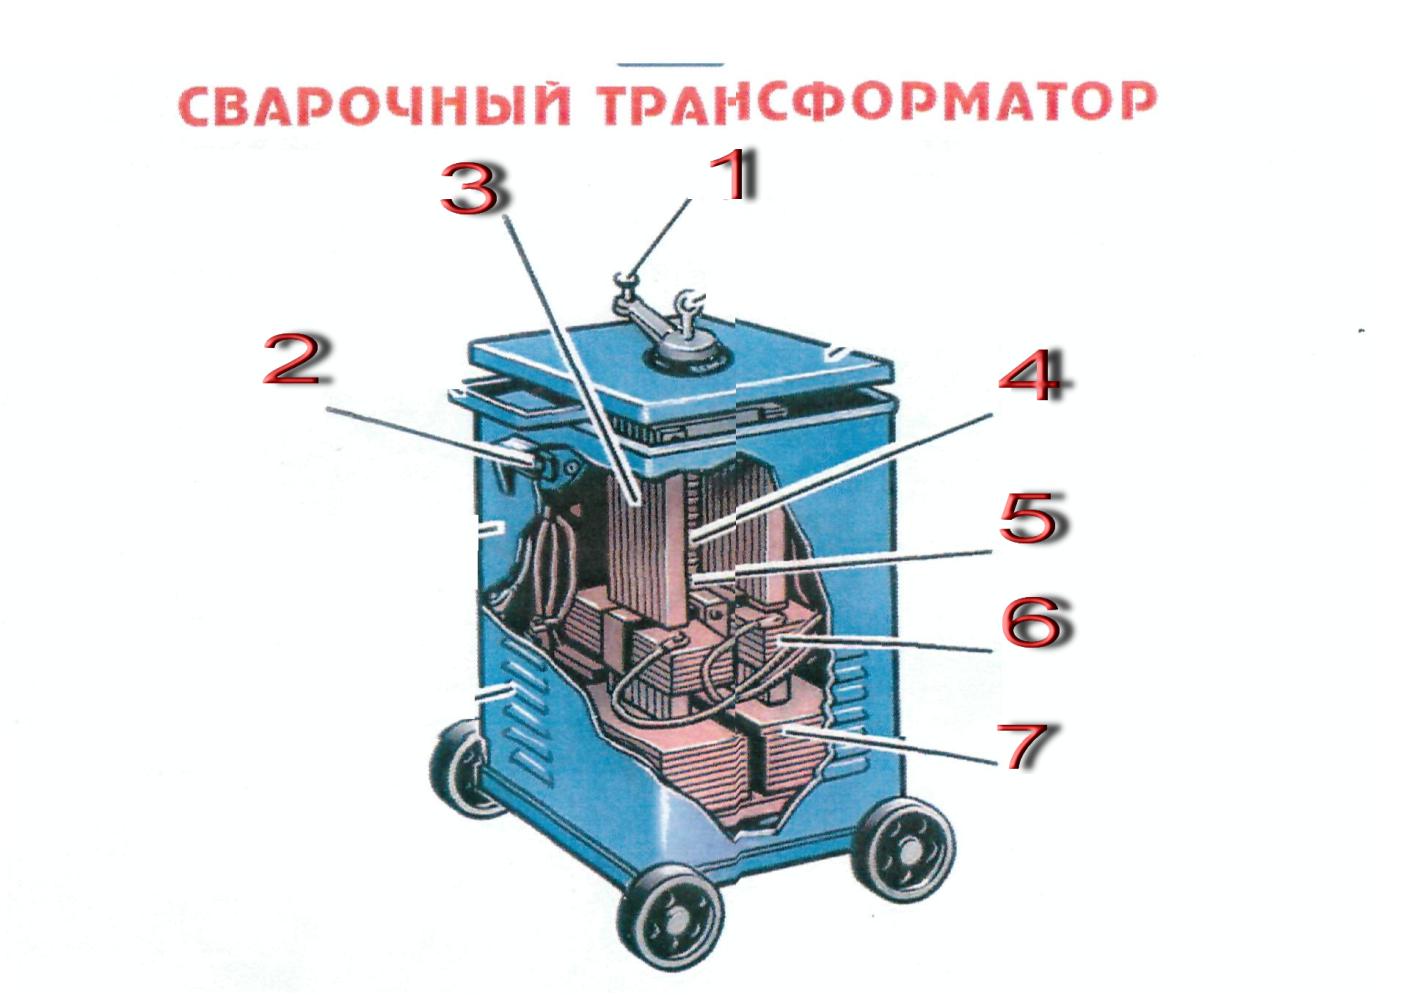 Сварочный трансформатор в аппарате для дуговой сварки: применение, характеристики и обслуживание